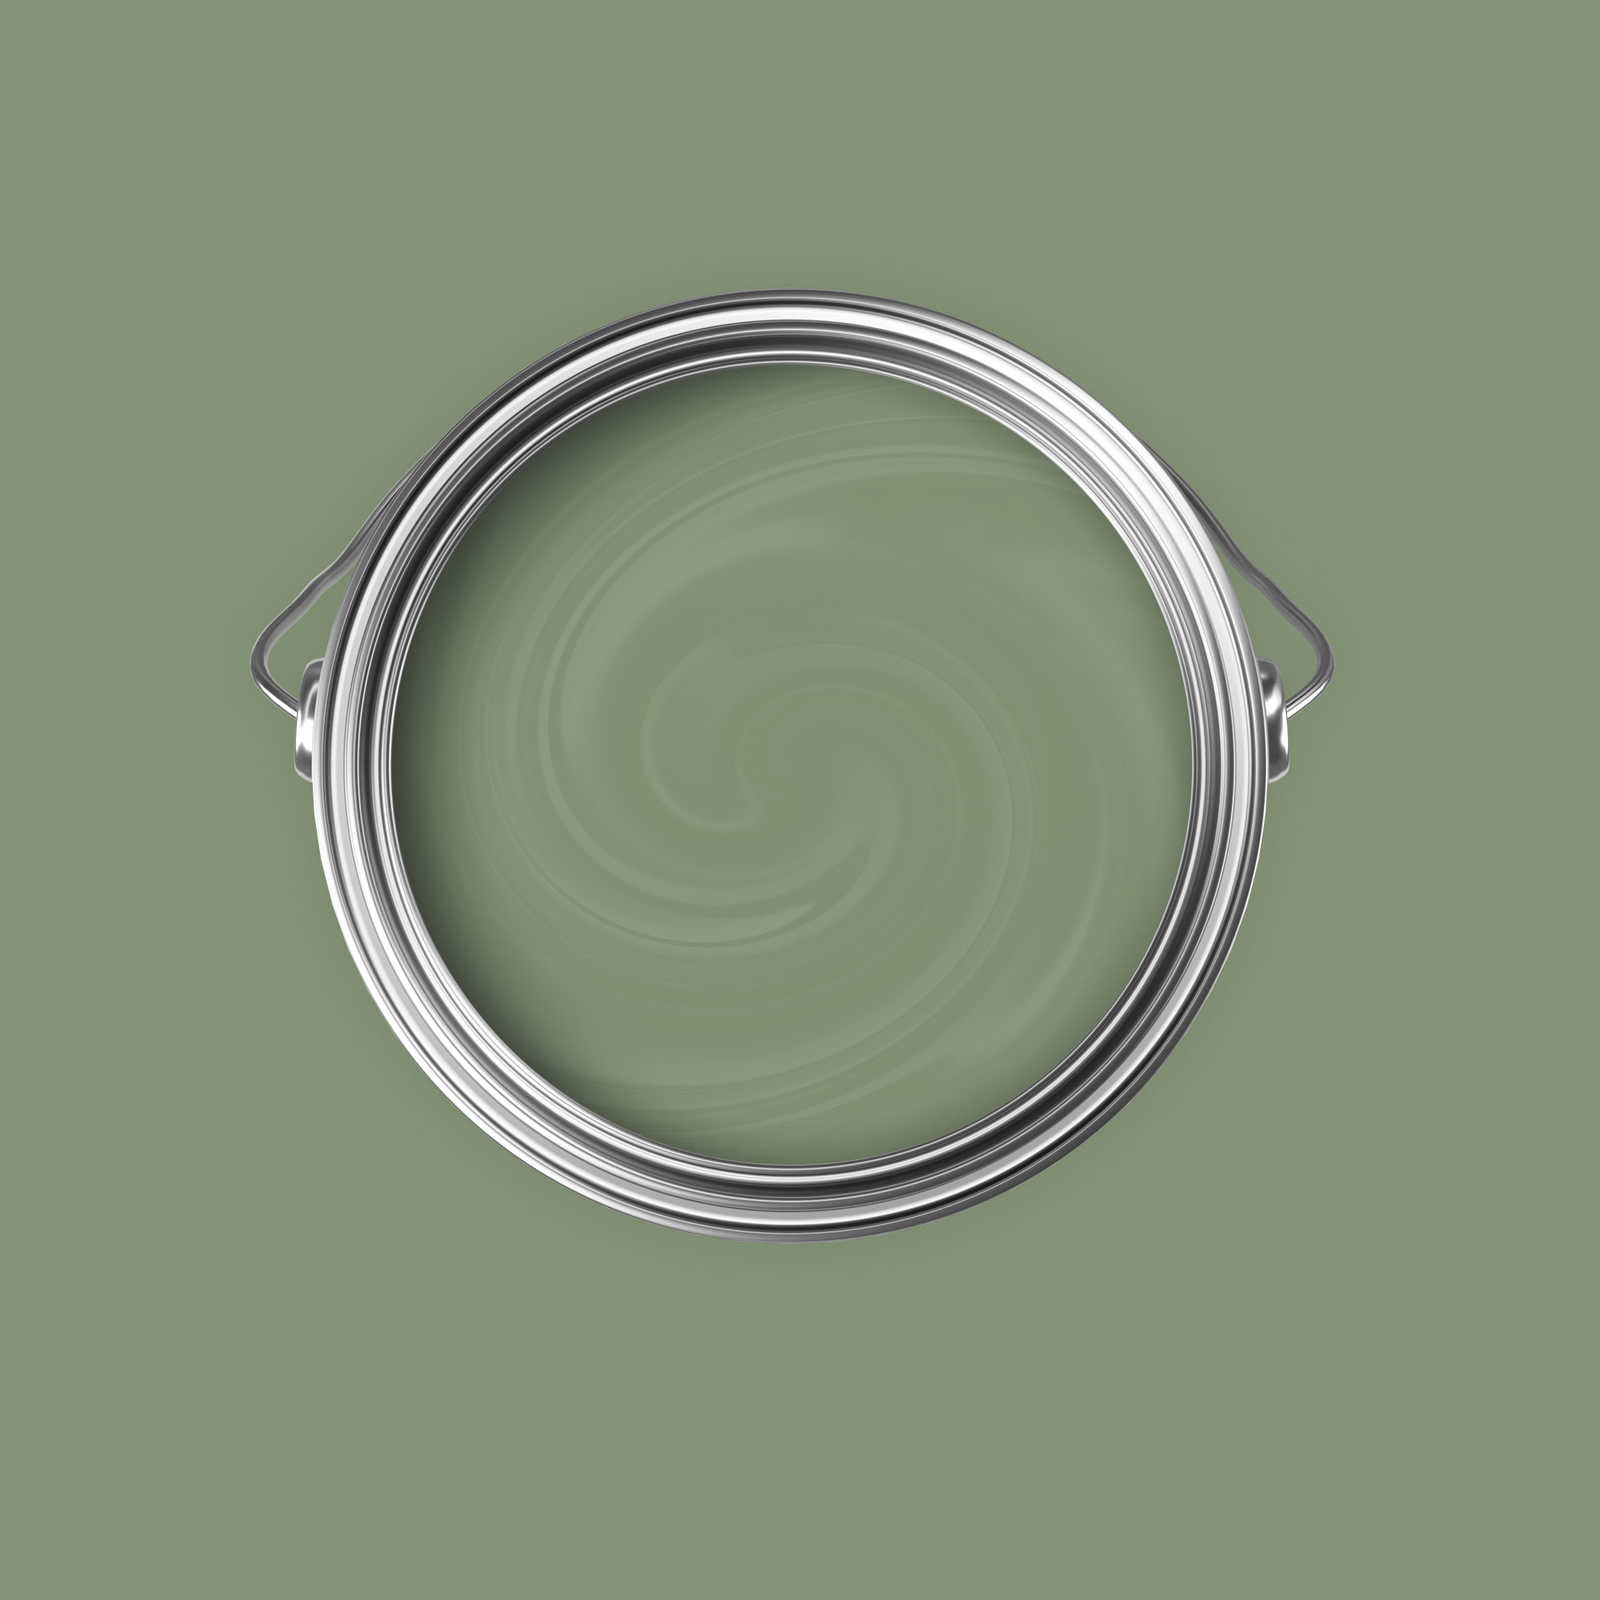             Premium Wandfarbe natürliches Olivgrün »Gorgeous Green« NW503 – 5 Liter
        